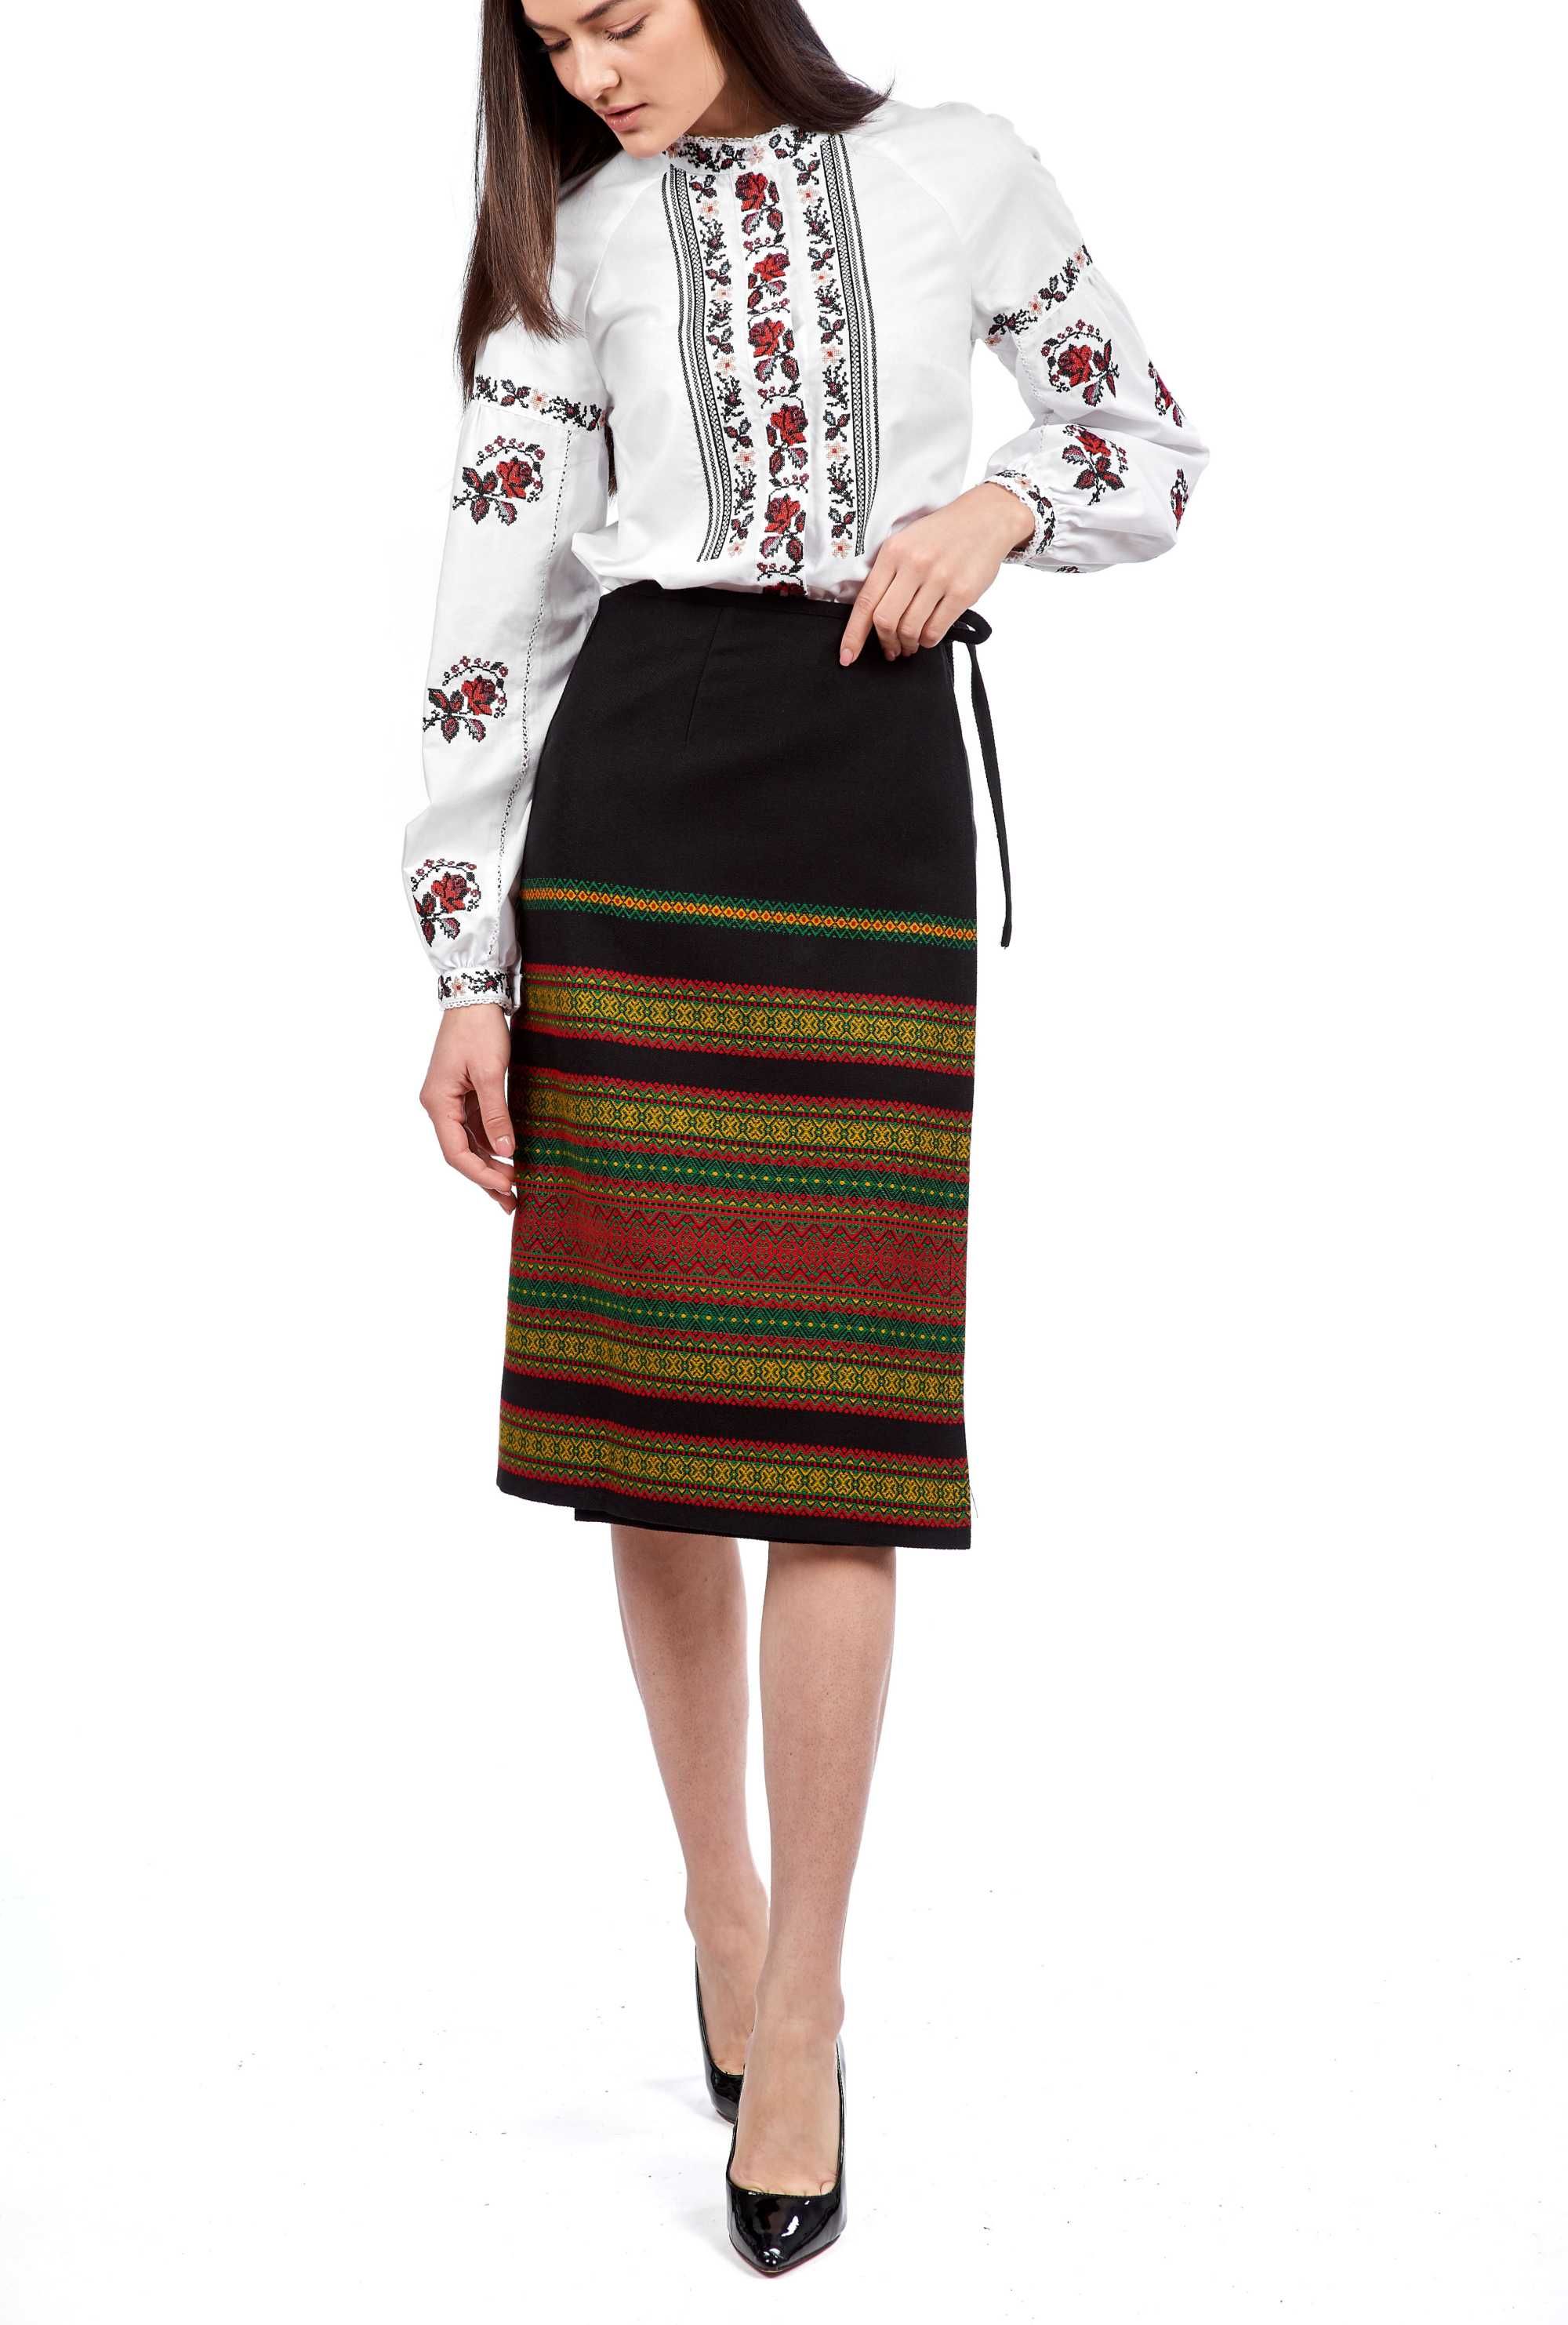 Плахта, Традиційний український одяг, Українська спідниця, Етно